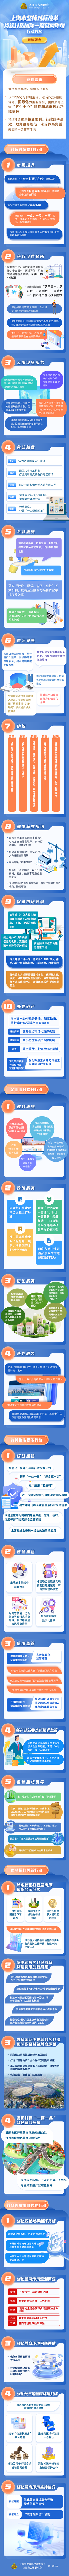 上海发布《持续打造国际一流营商环境行动方案》